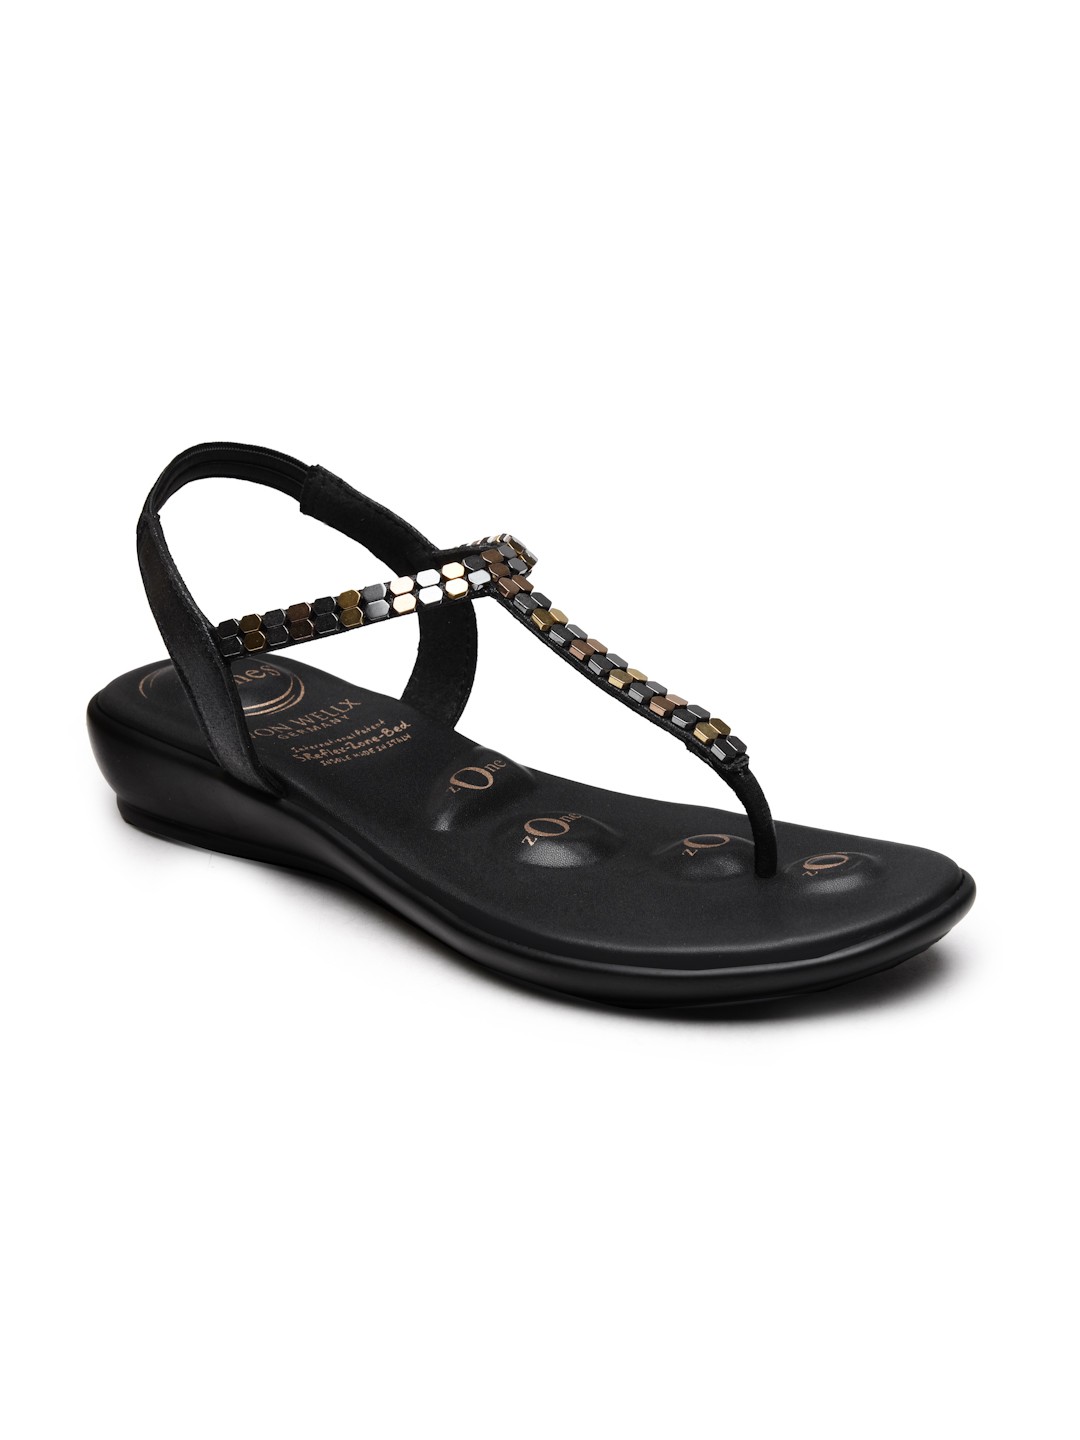 Buy Von Wellx Germany Comfort Women's Black Casual Sandals Regina Online in Mysore